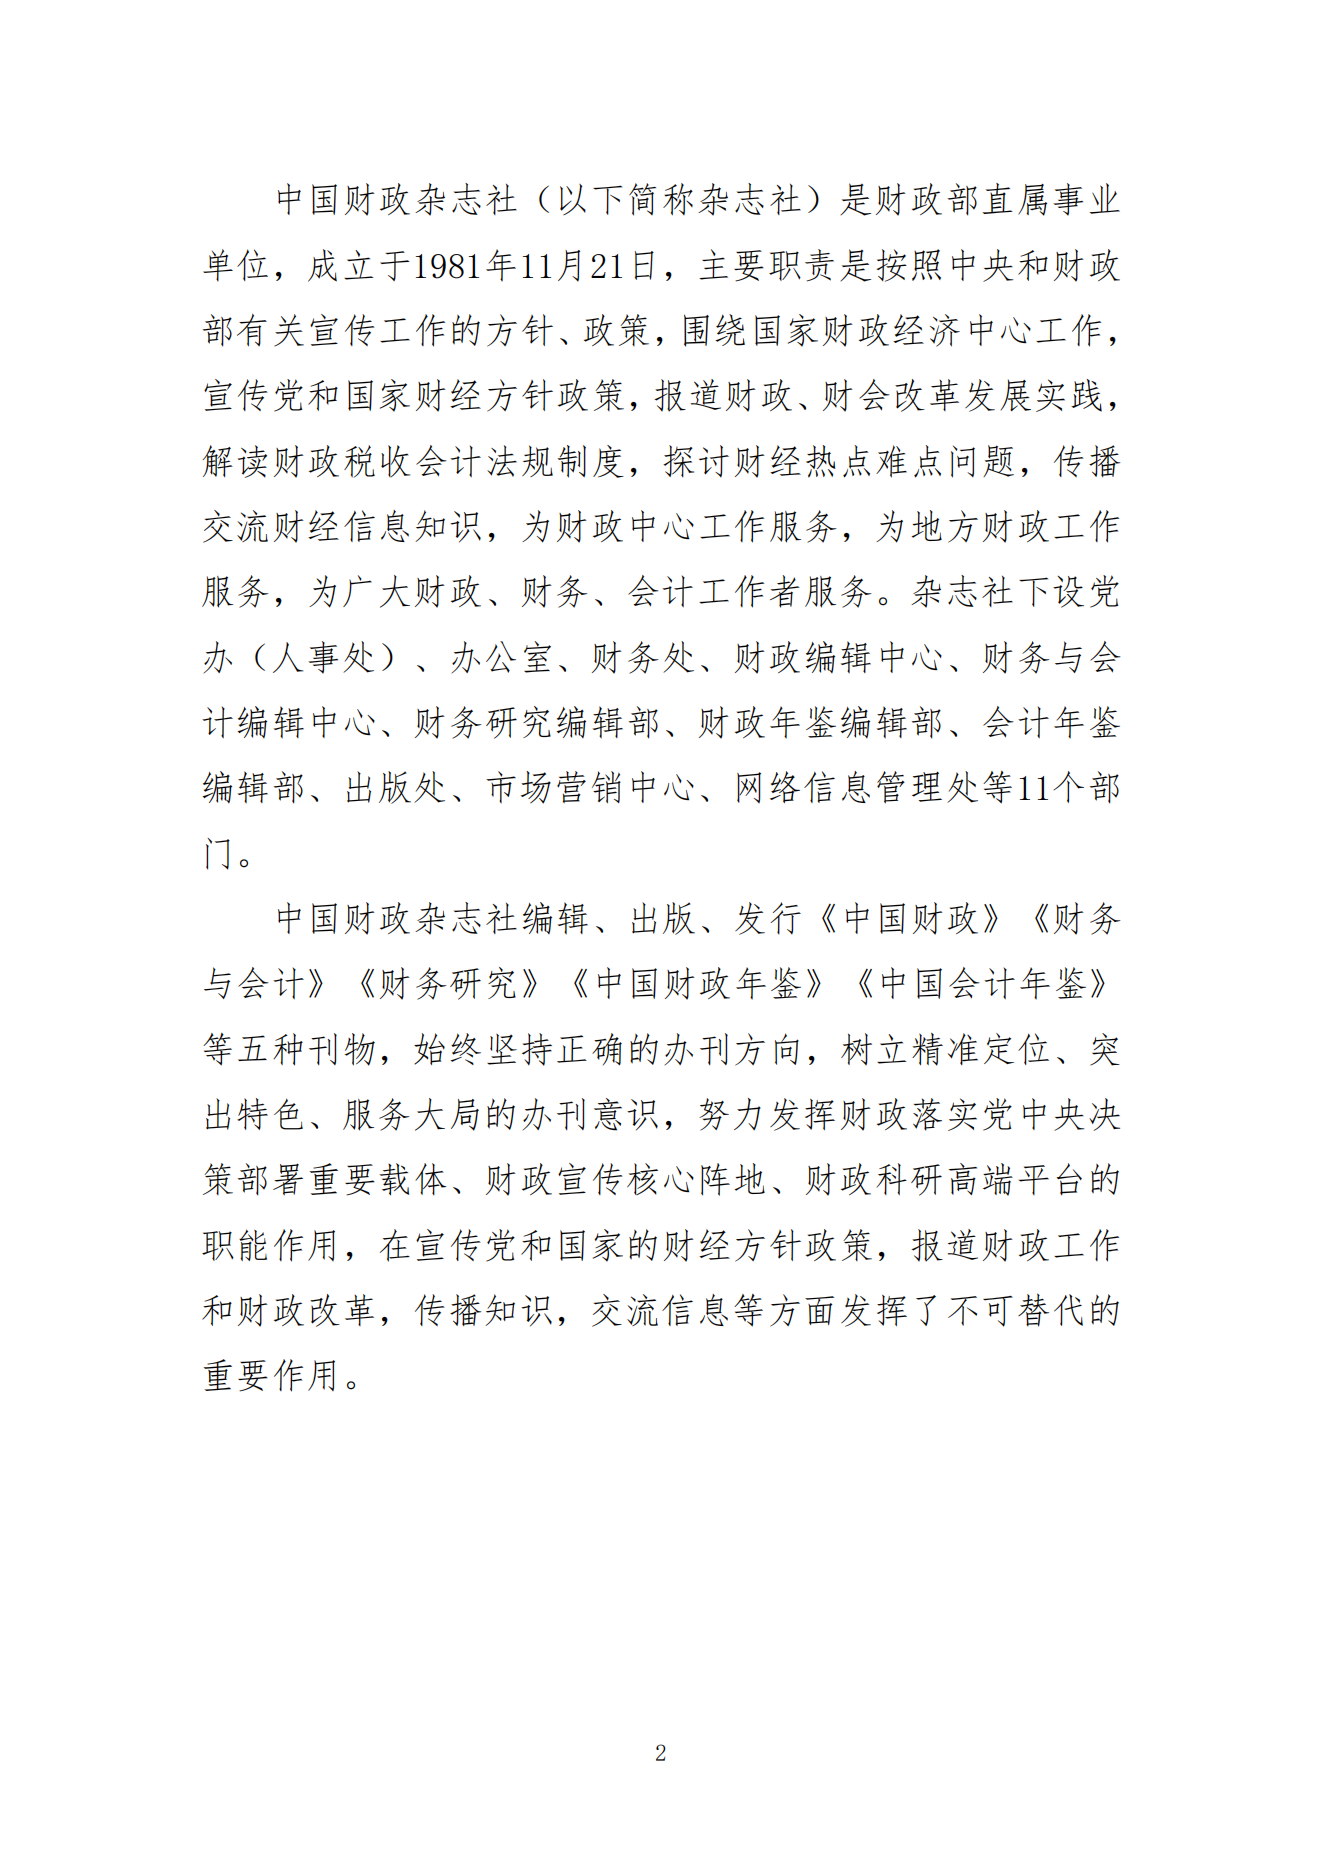 2023年8月7日 中国财政杂志社2022年度决算公开稿(1)_04.png